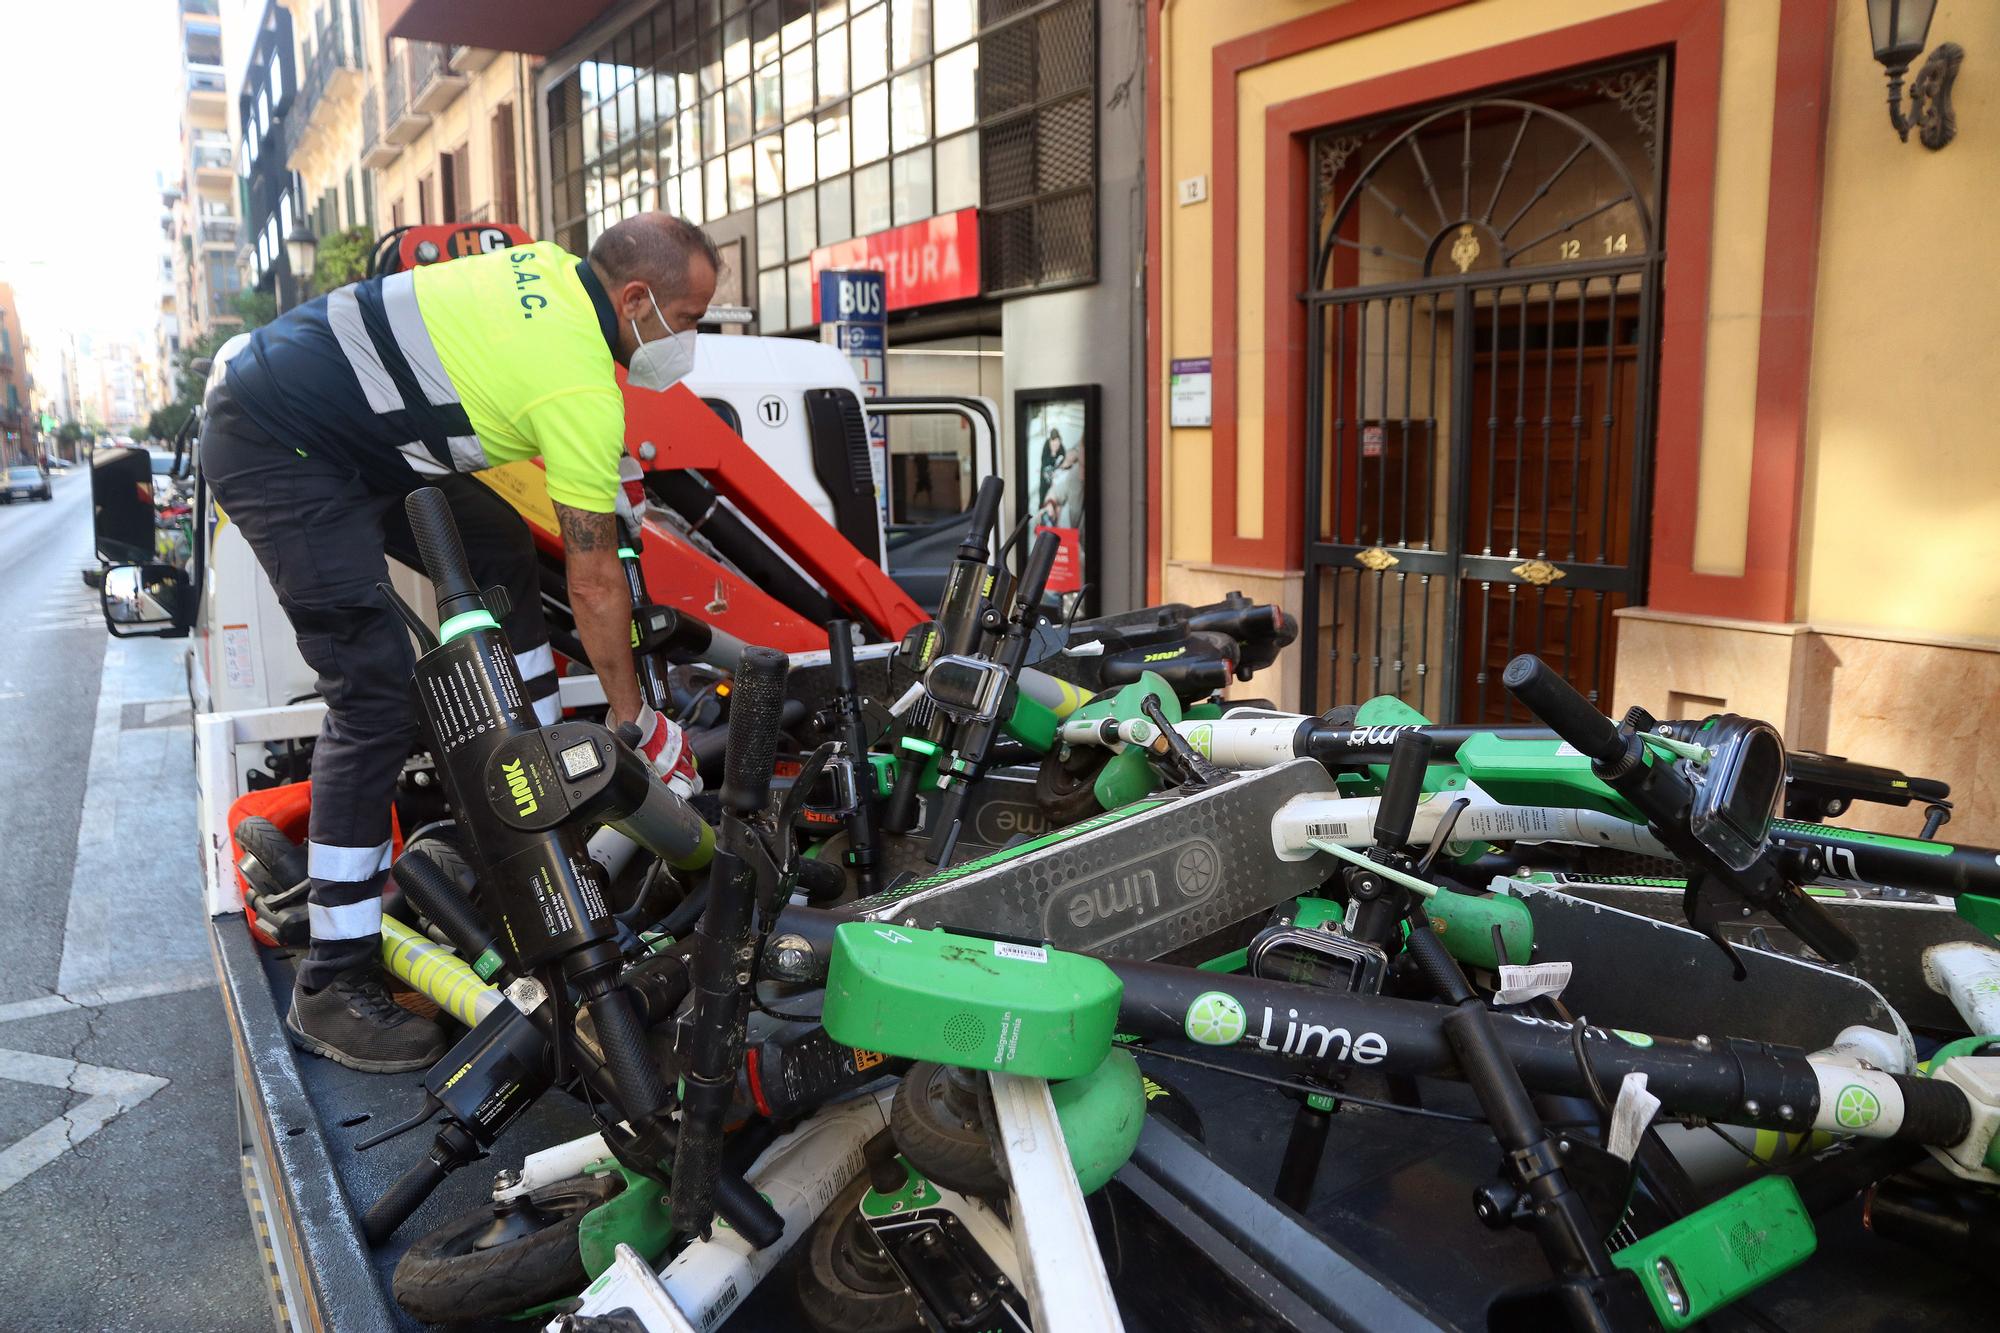 La grúa de Málaga ya se lleva los patinetes y bicicletas mal aparcados